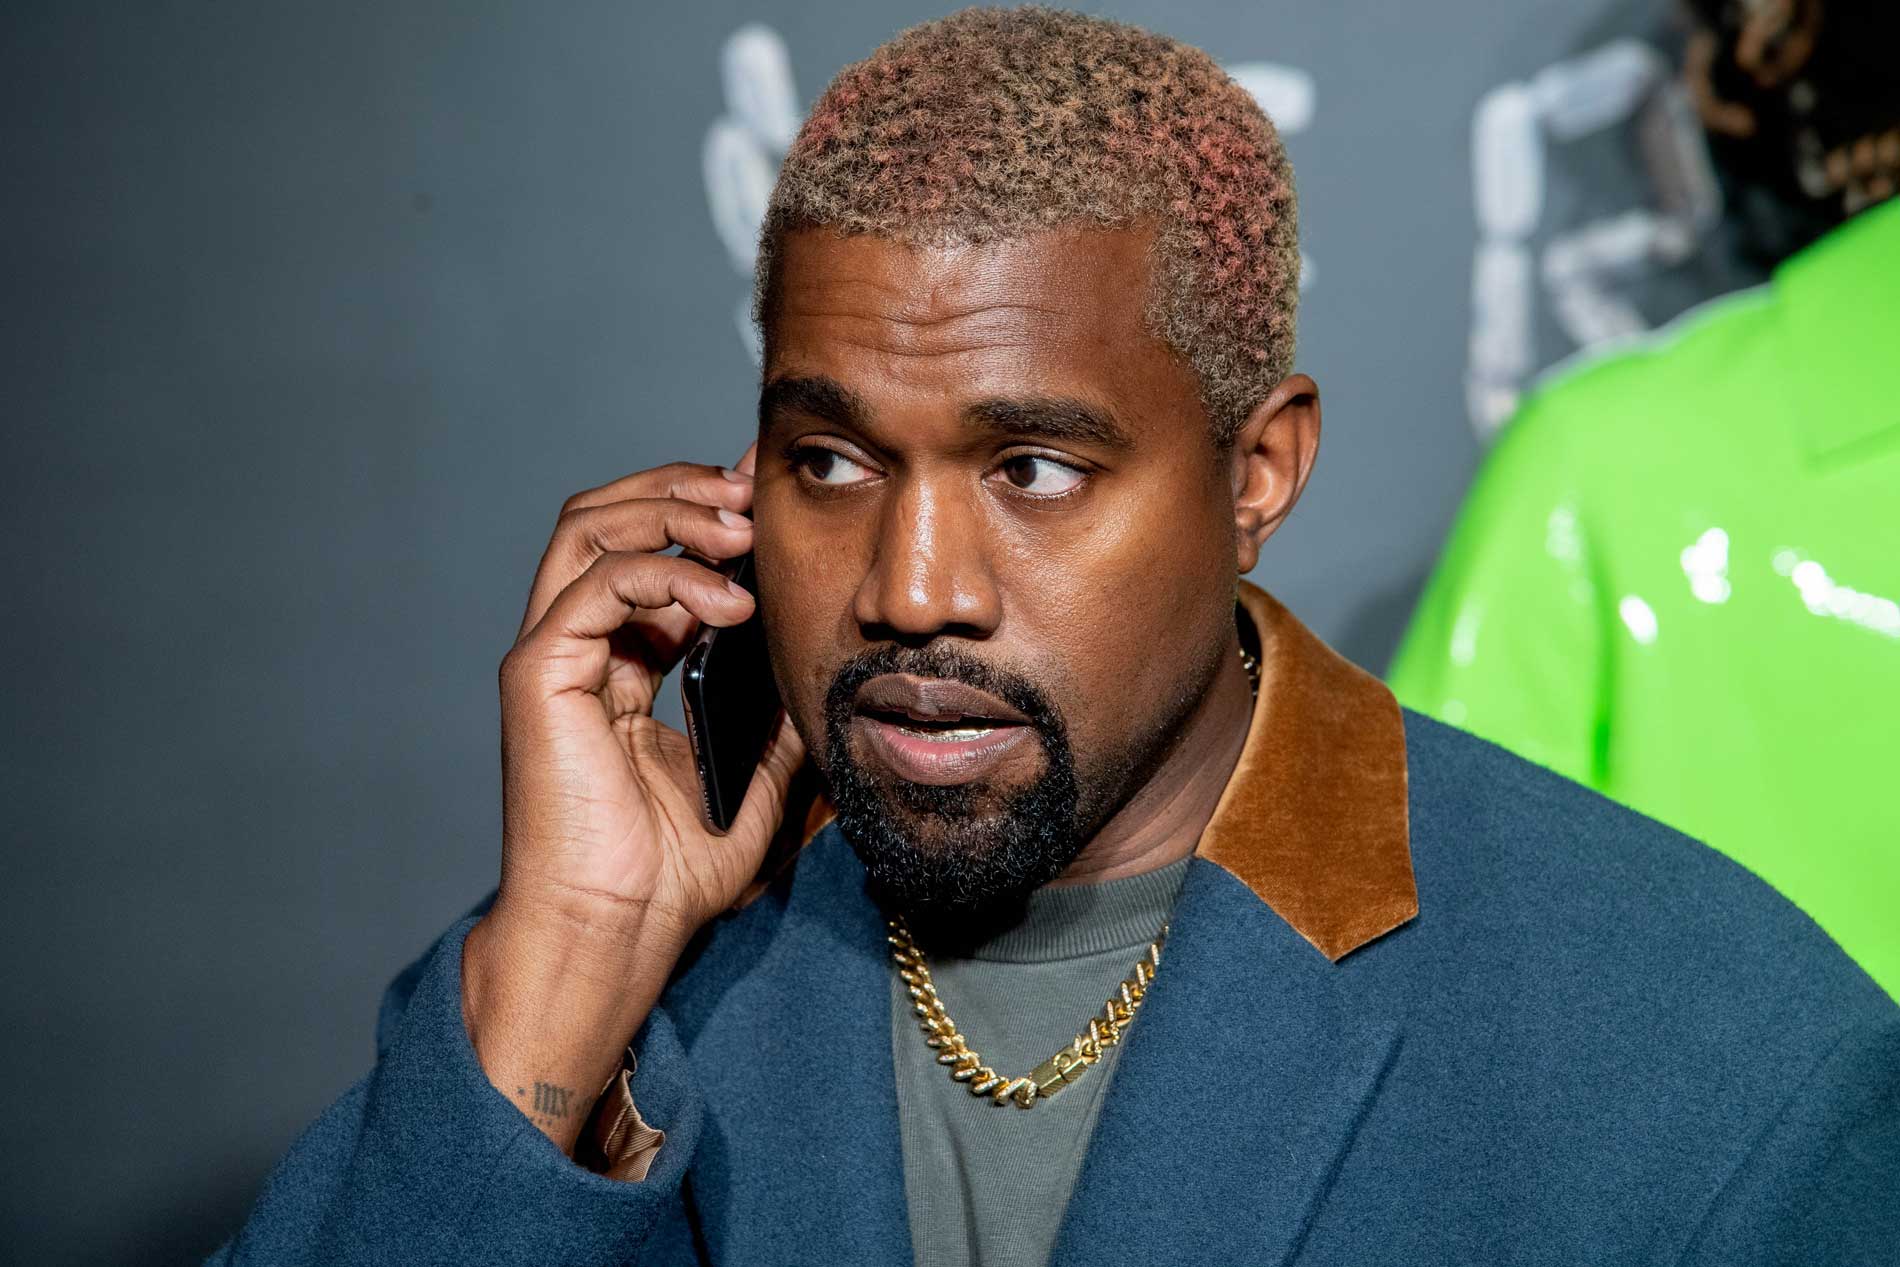 Kanye West, Gap mocked for Yeezy trash bag collection